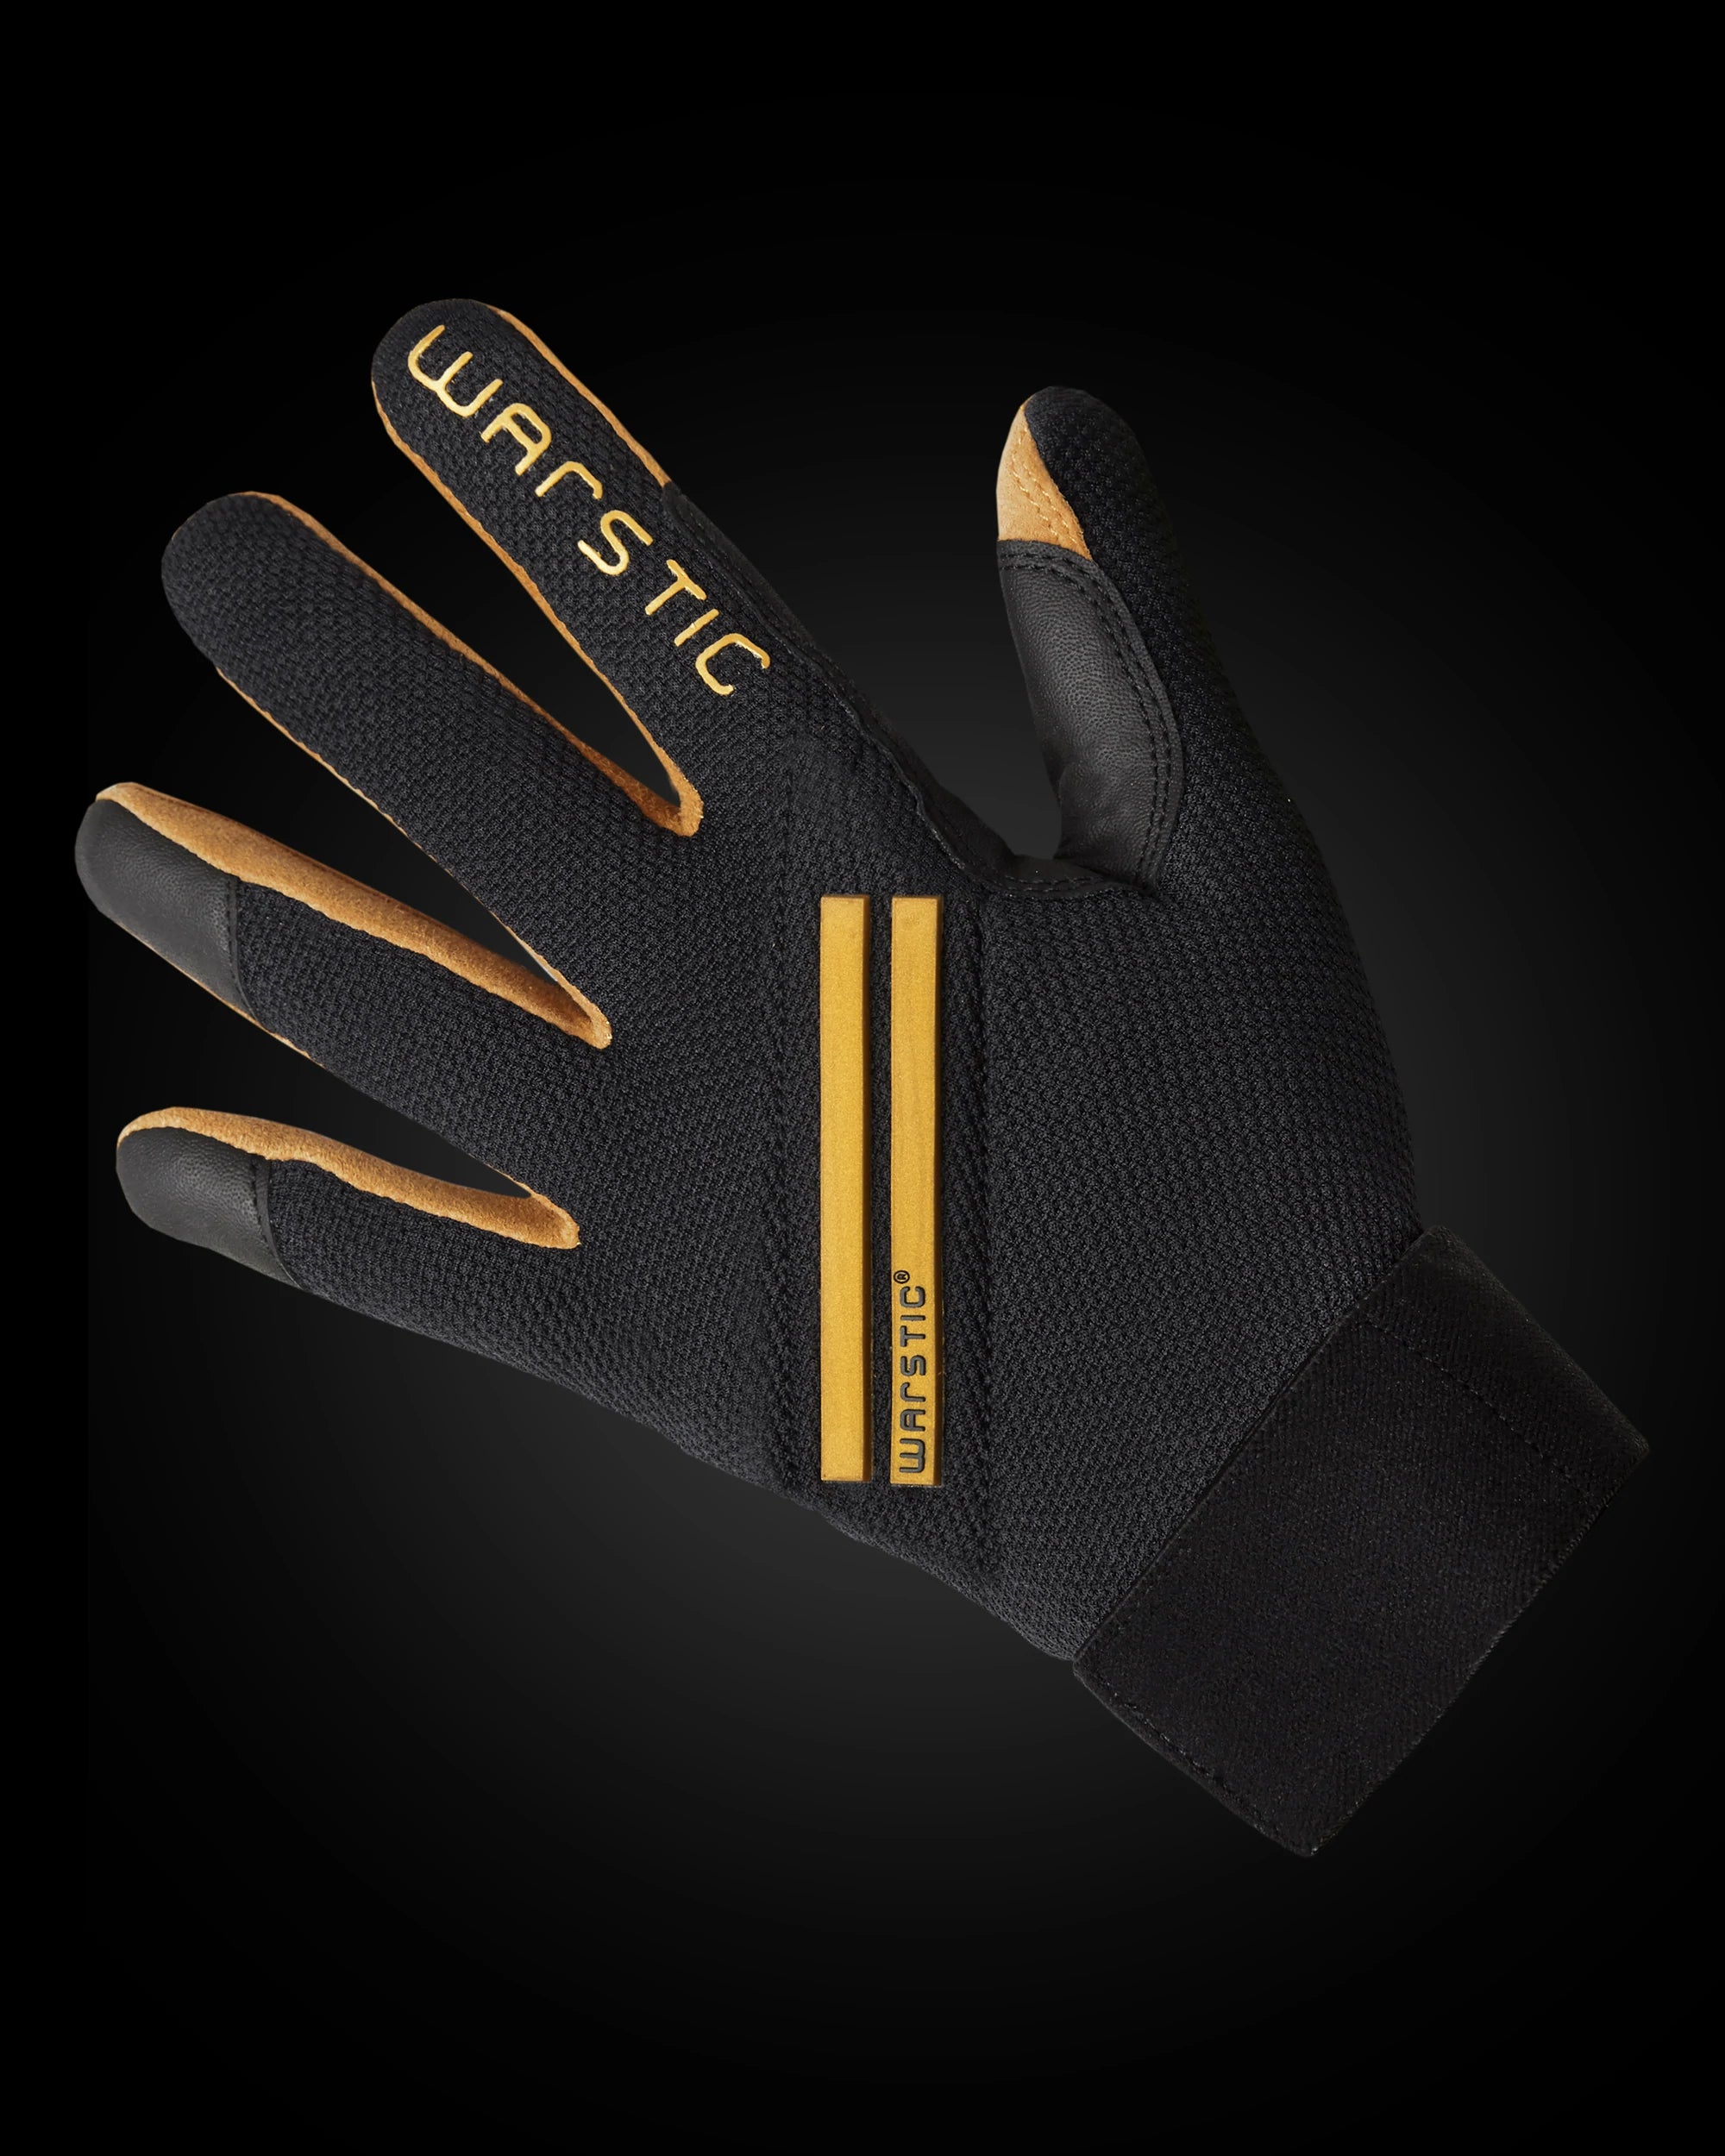 WARSTIC - WORKMAN3 Adult Batting Gloves - Black/Gold Stripes